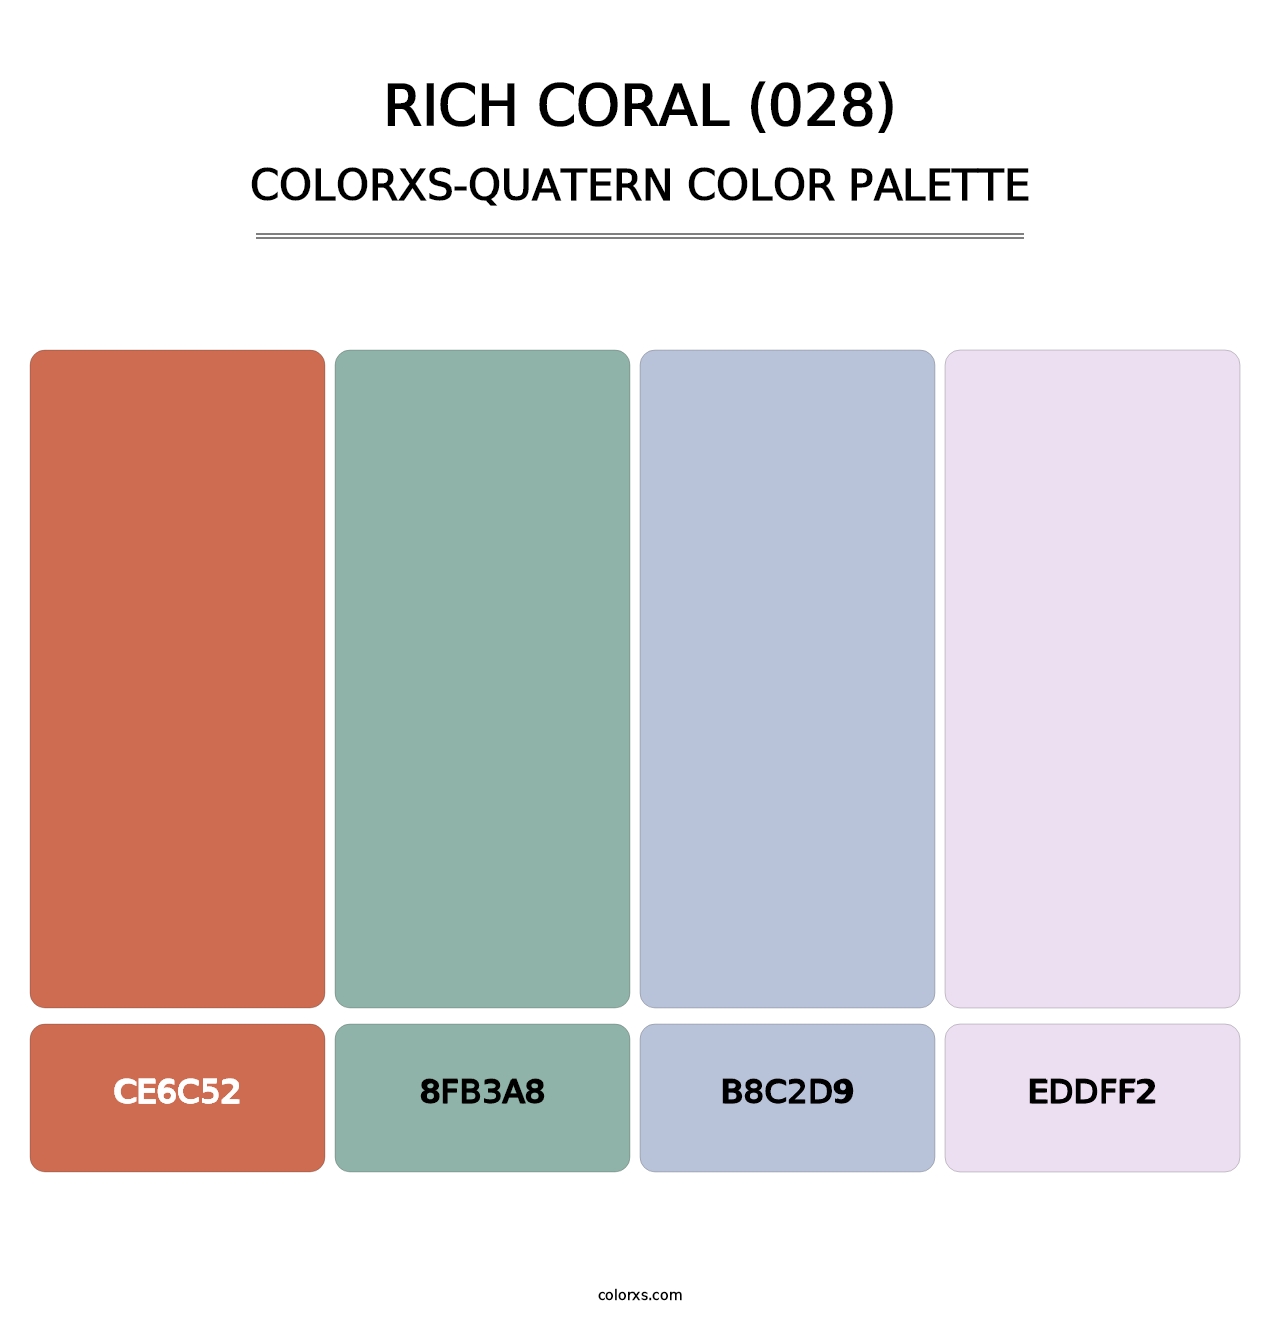 Rich Coral (028) - Colorxs Quatern Palette